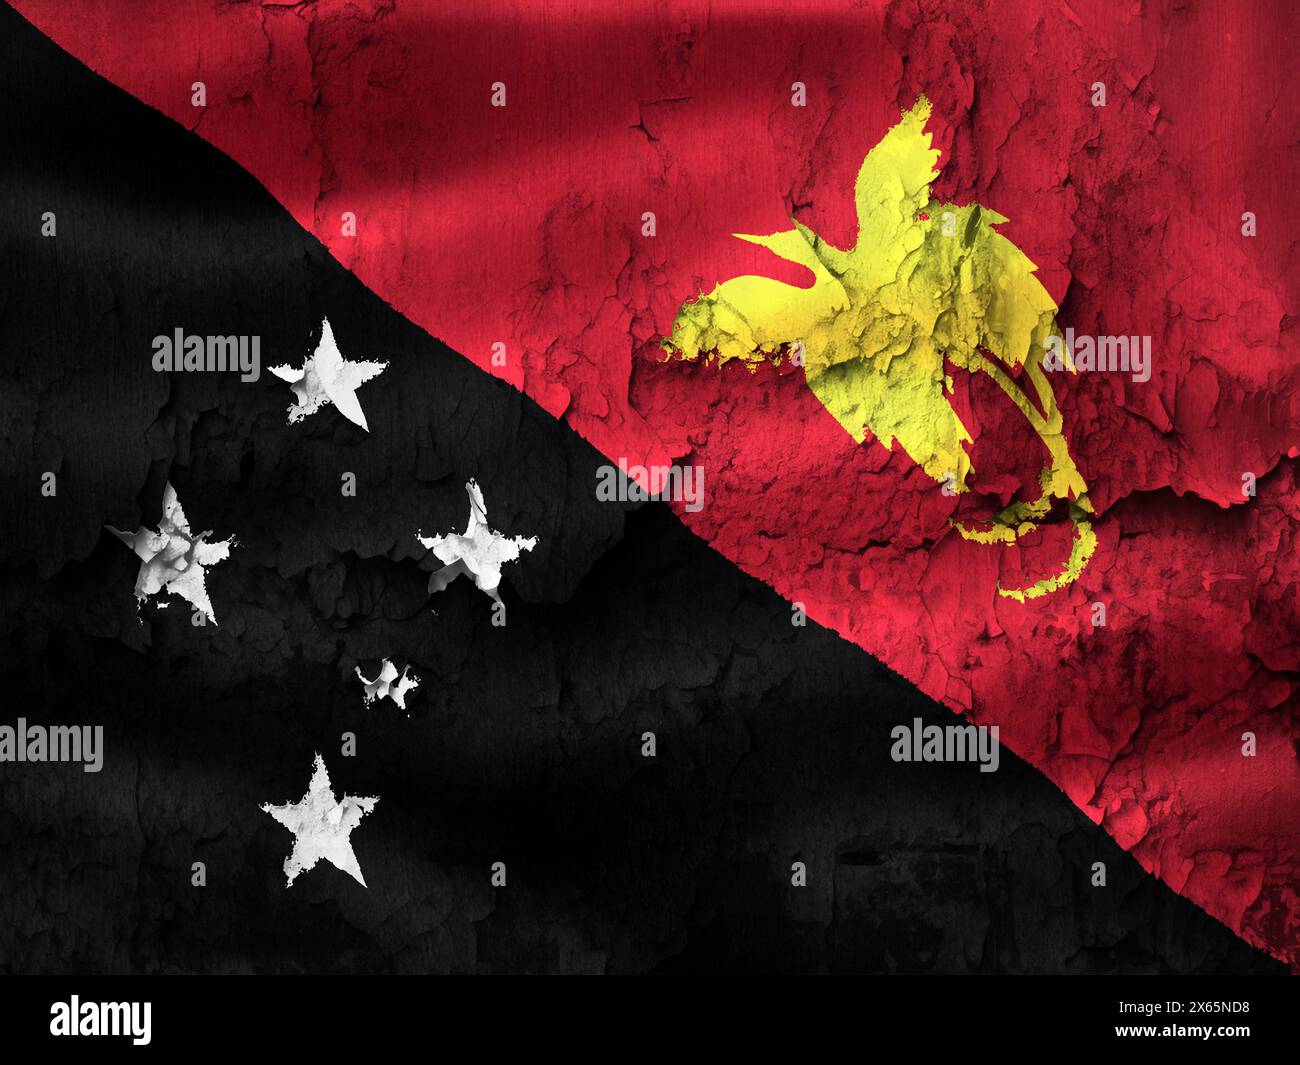 3D-Illustration of a Papua New Guinea flag - realistic waving fa Stock Photo